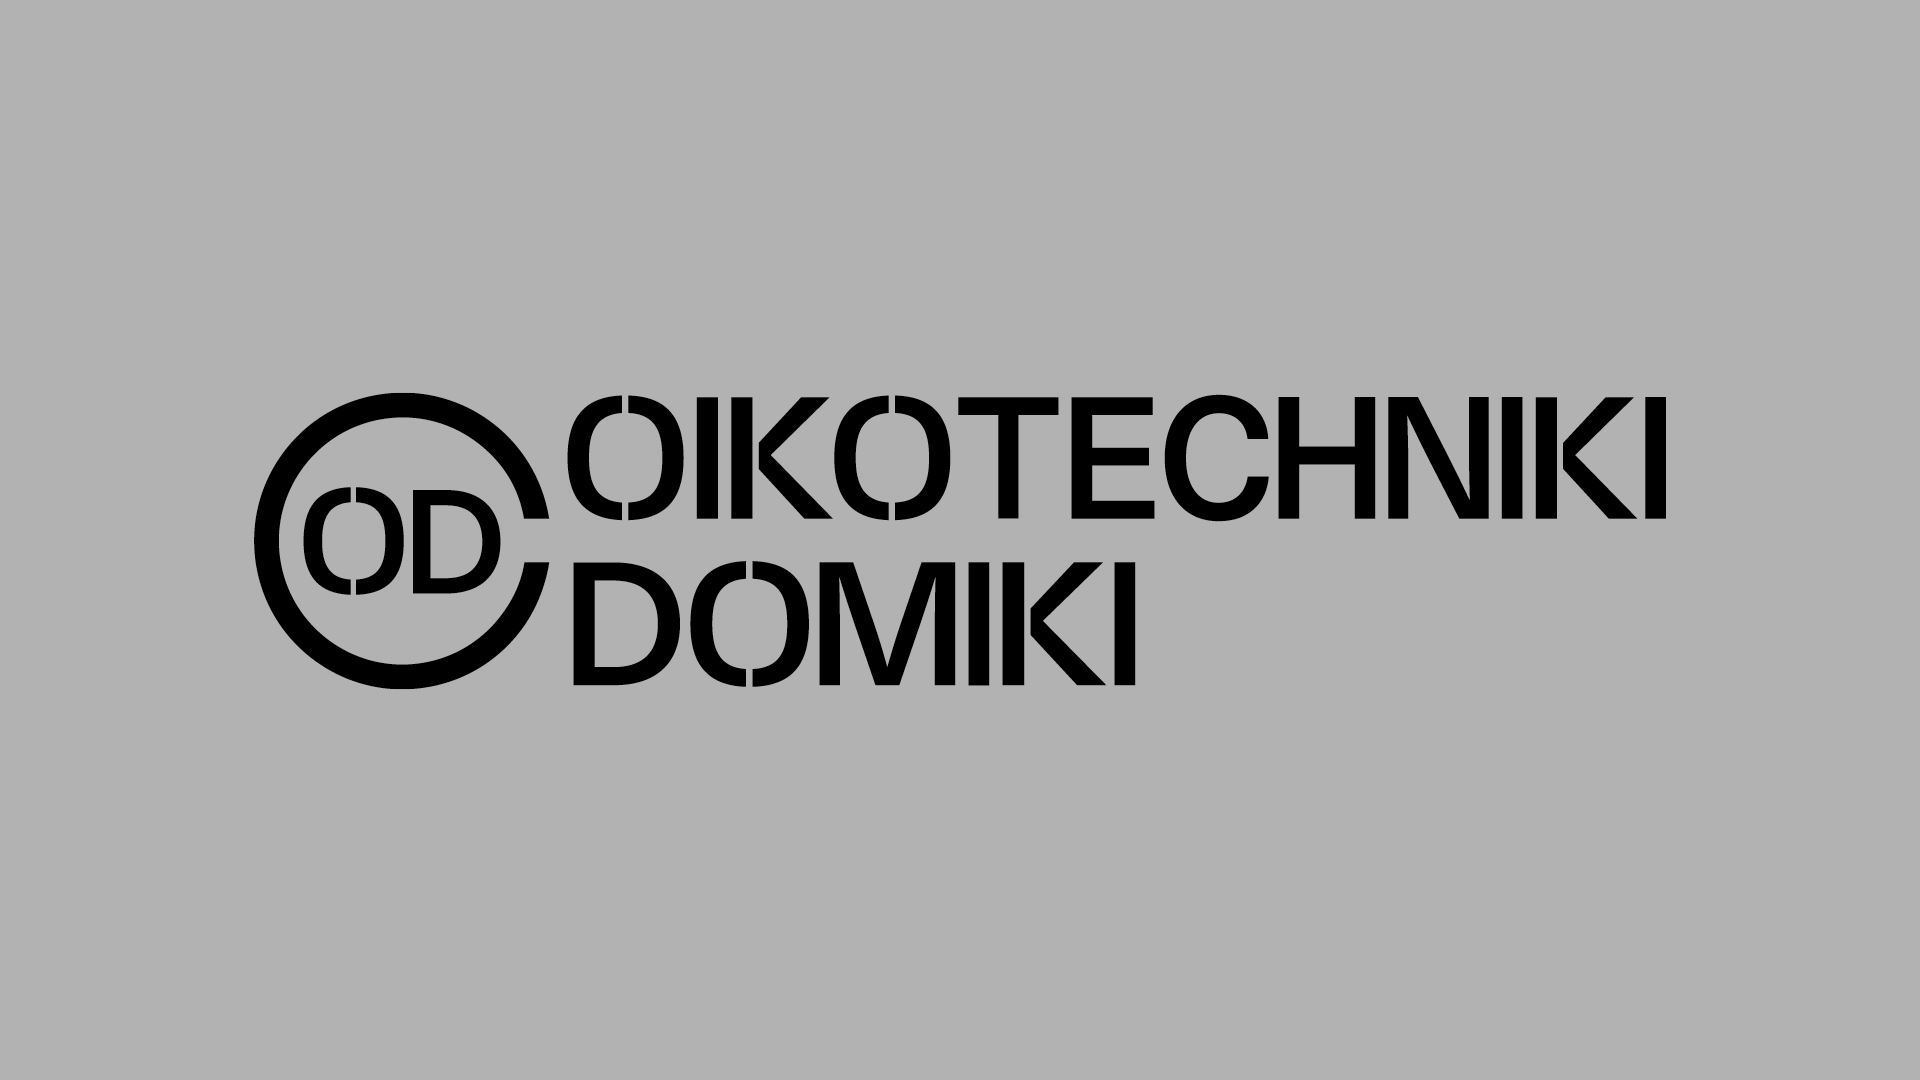 Oikotechniki Domiki Logotype design